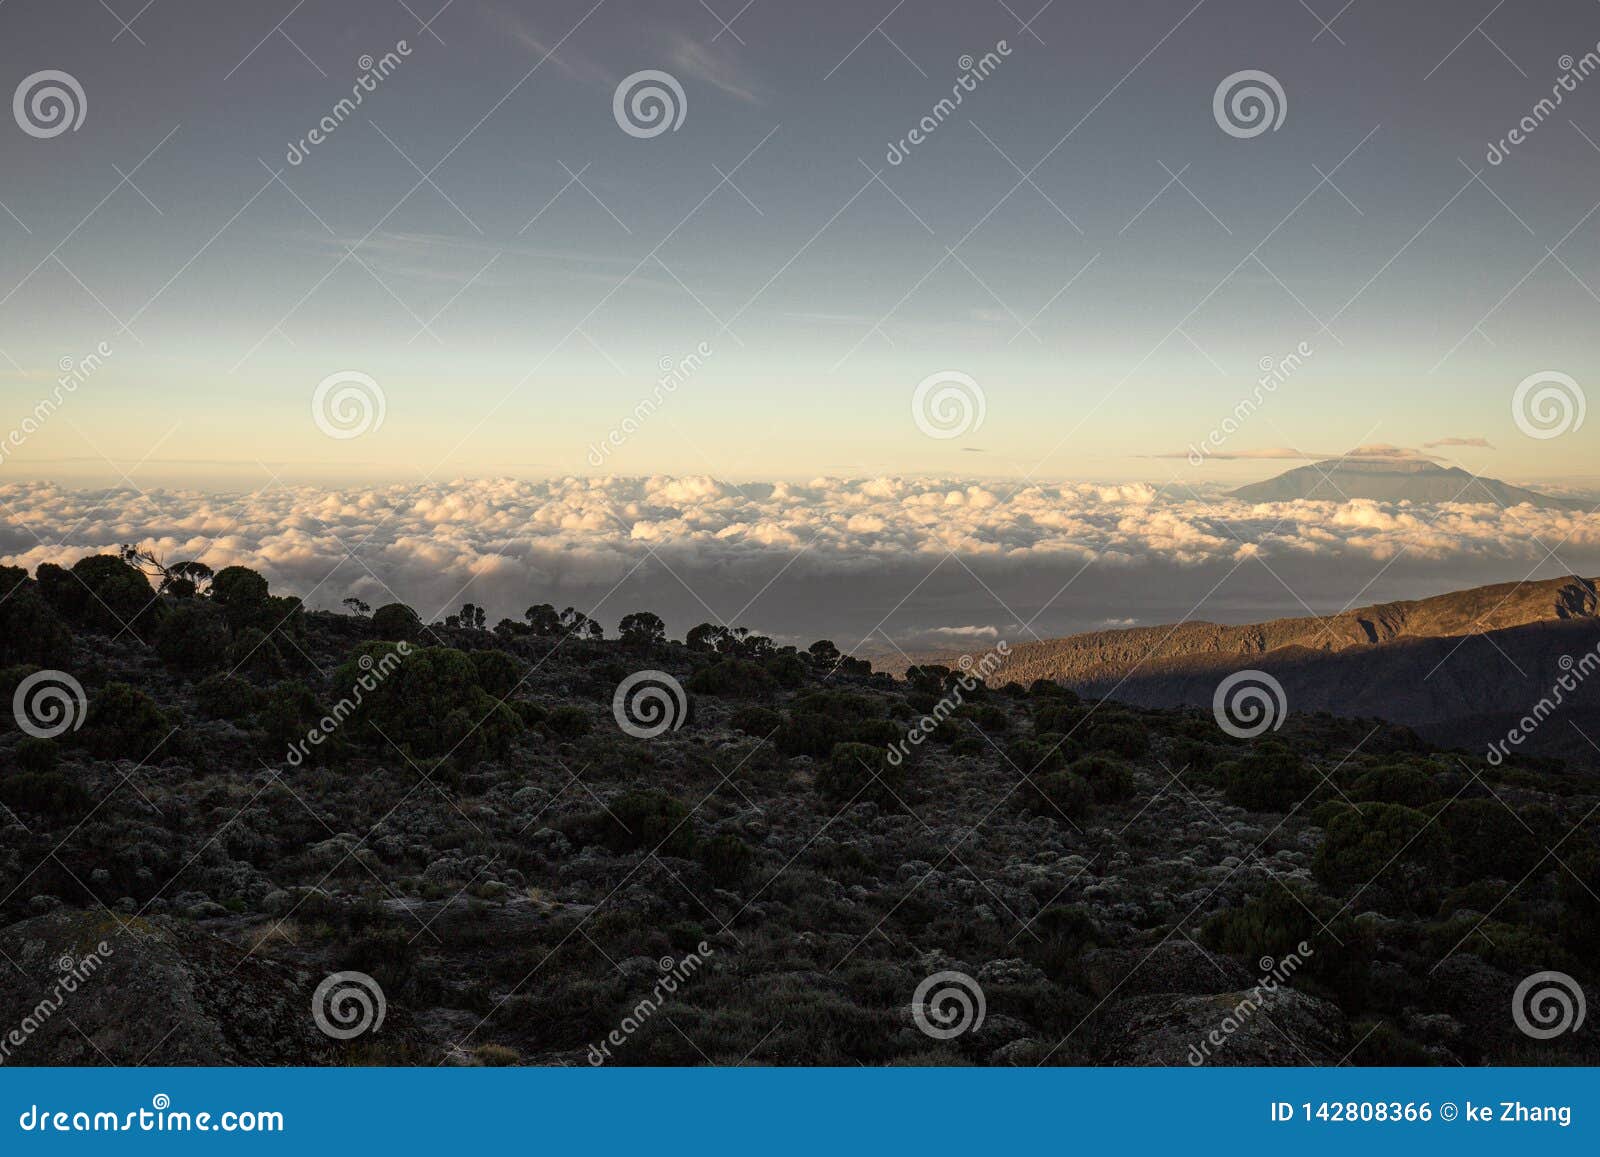 Fotvandra upp Mt Kilimanjaro Tanzania. Sikter av mt-kilimanjaroen på vägen som upp till klättrar toppmötet